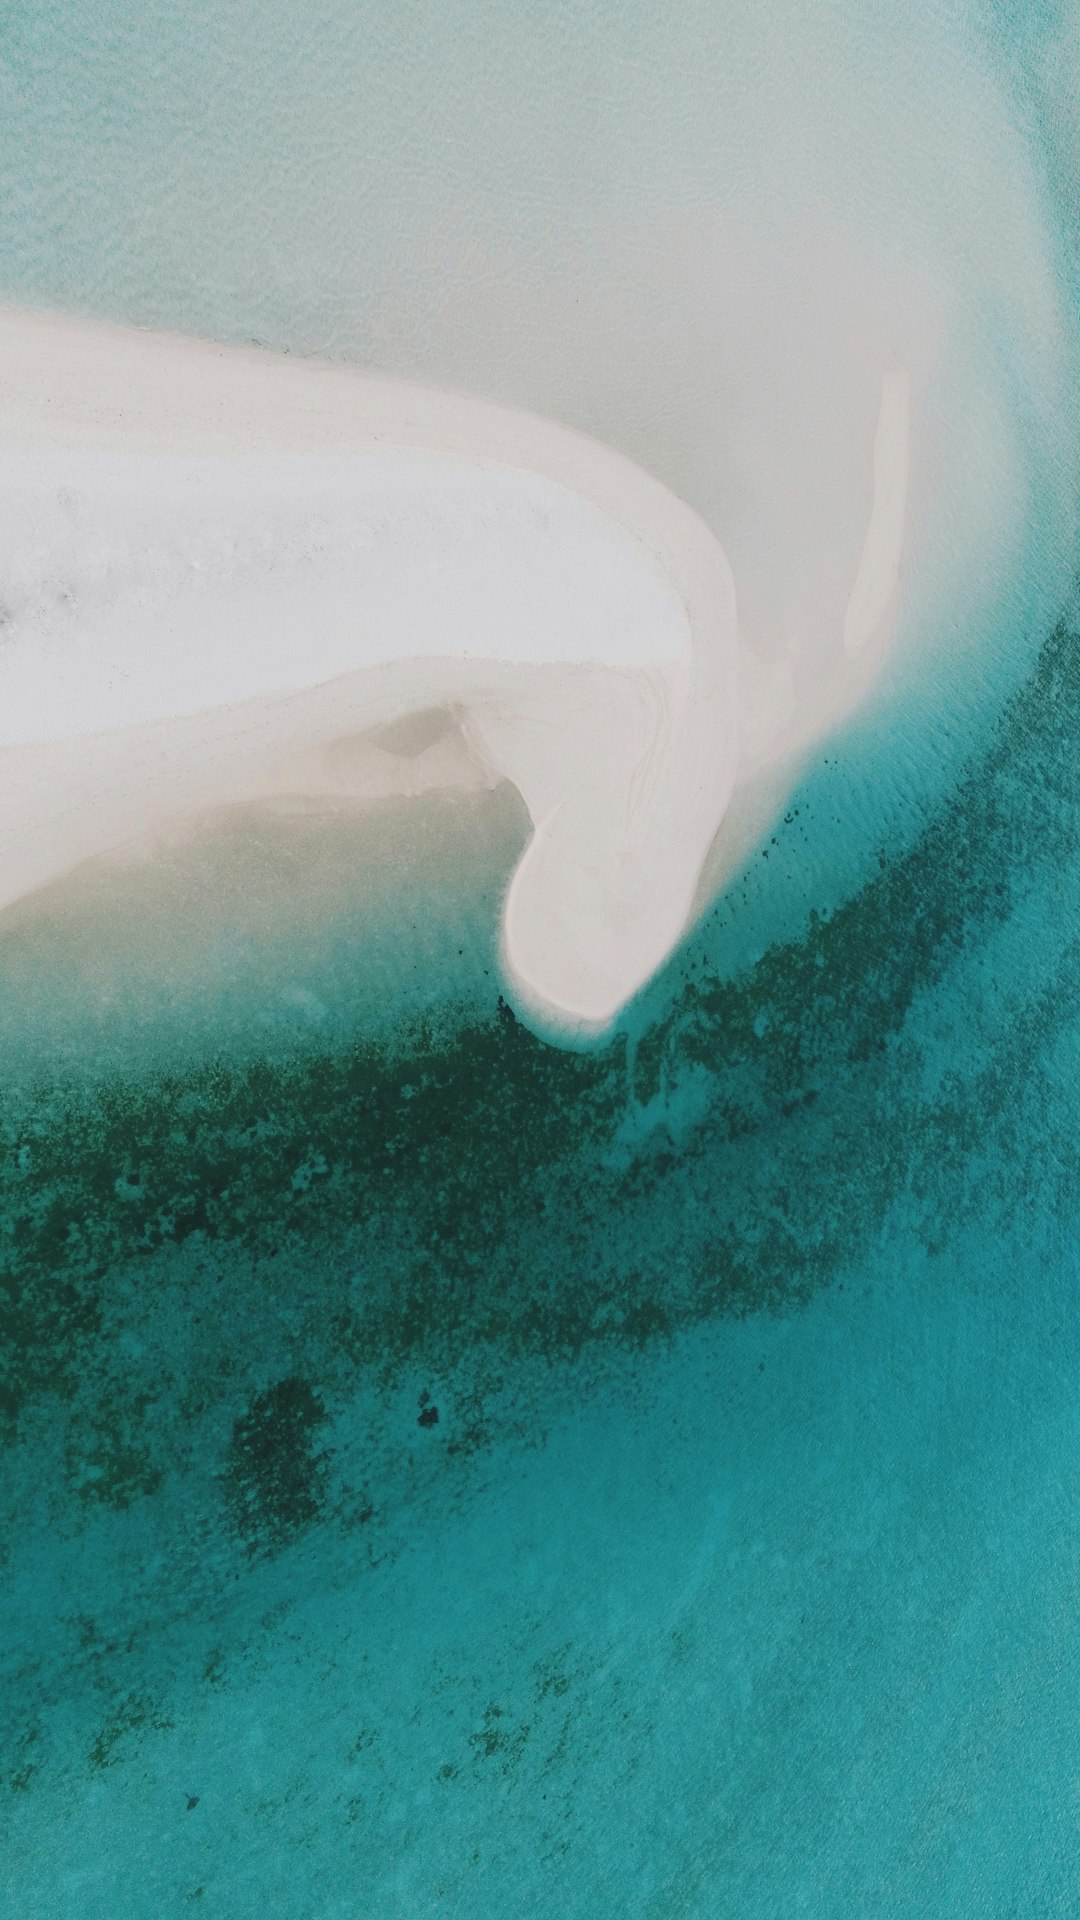 Coastal and oceanic landforms photo spot Fenfushi Maldives